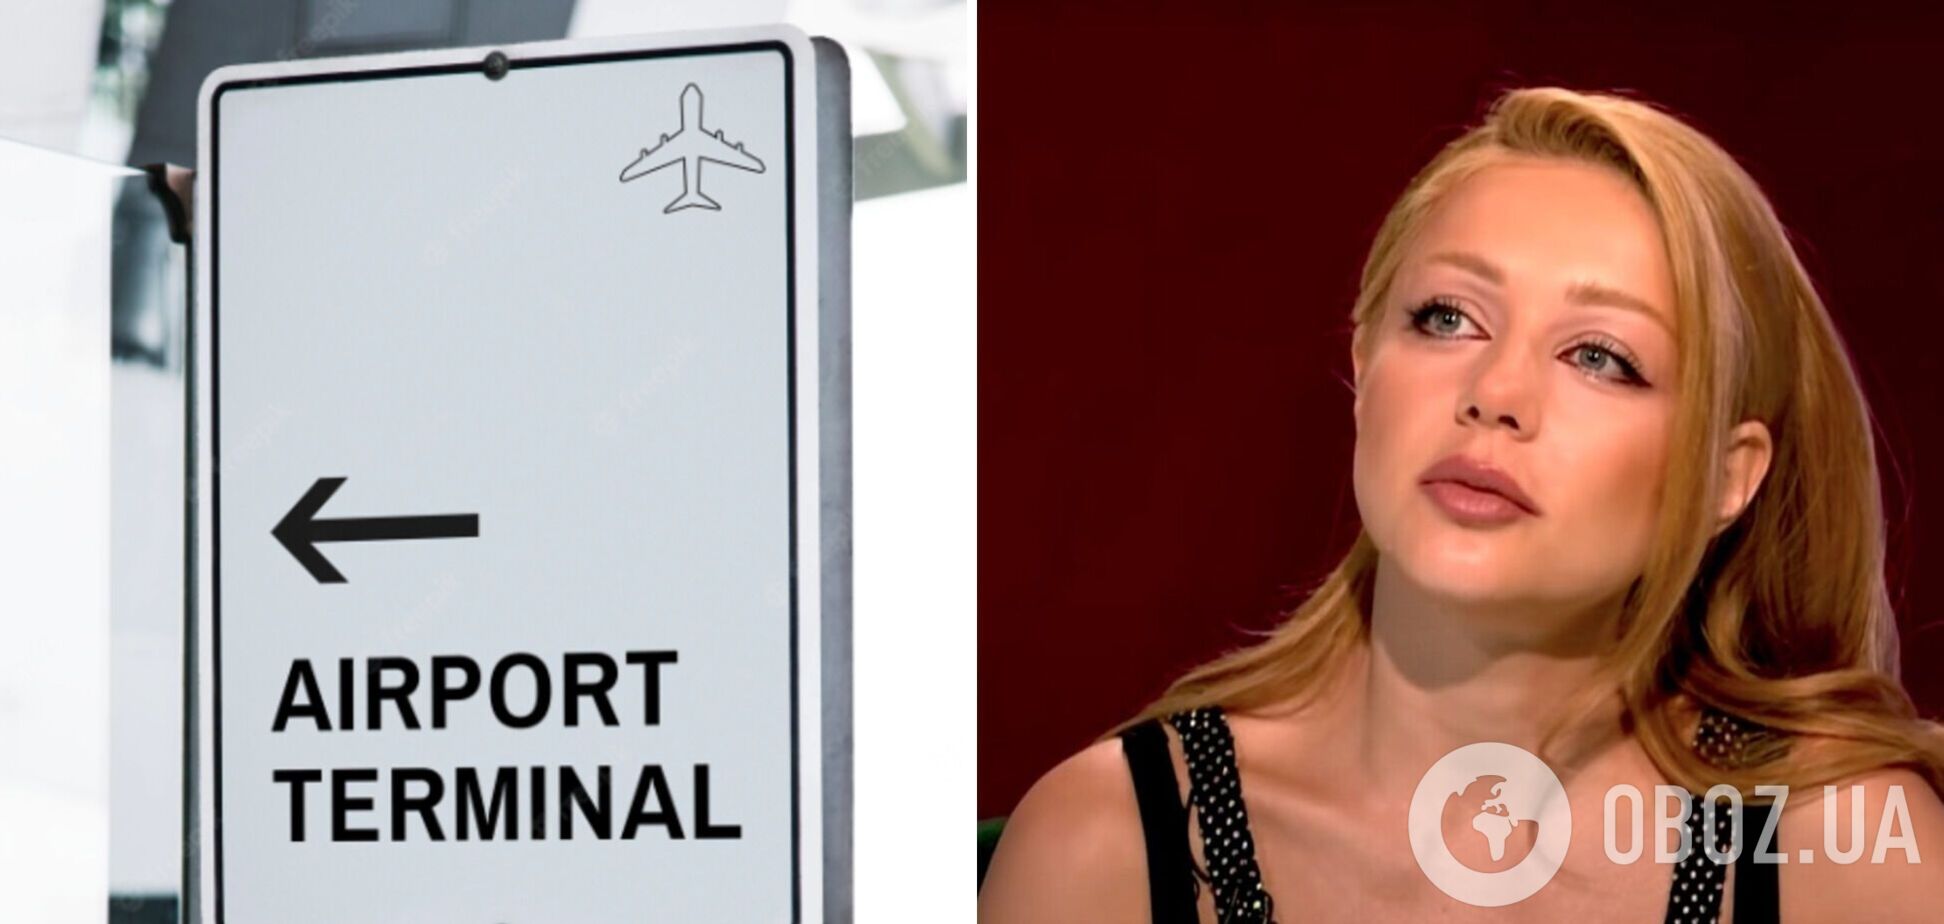 Тіна Кароль розплакалася в аеропорту через проросійського співробітника: хробак і падлюка